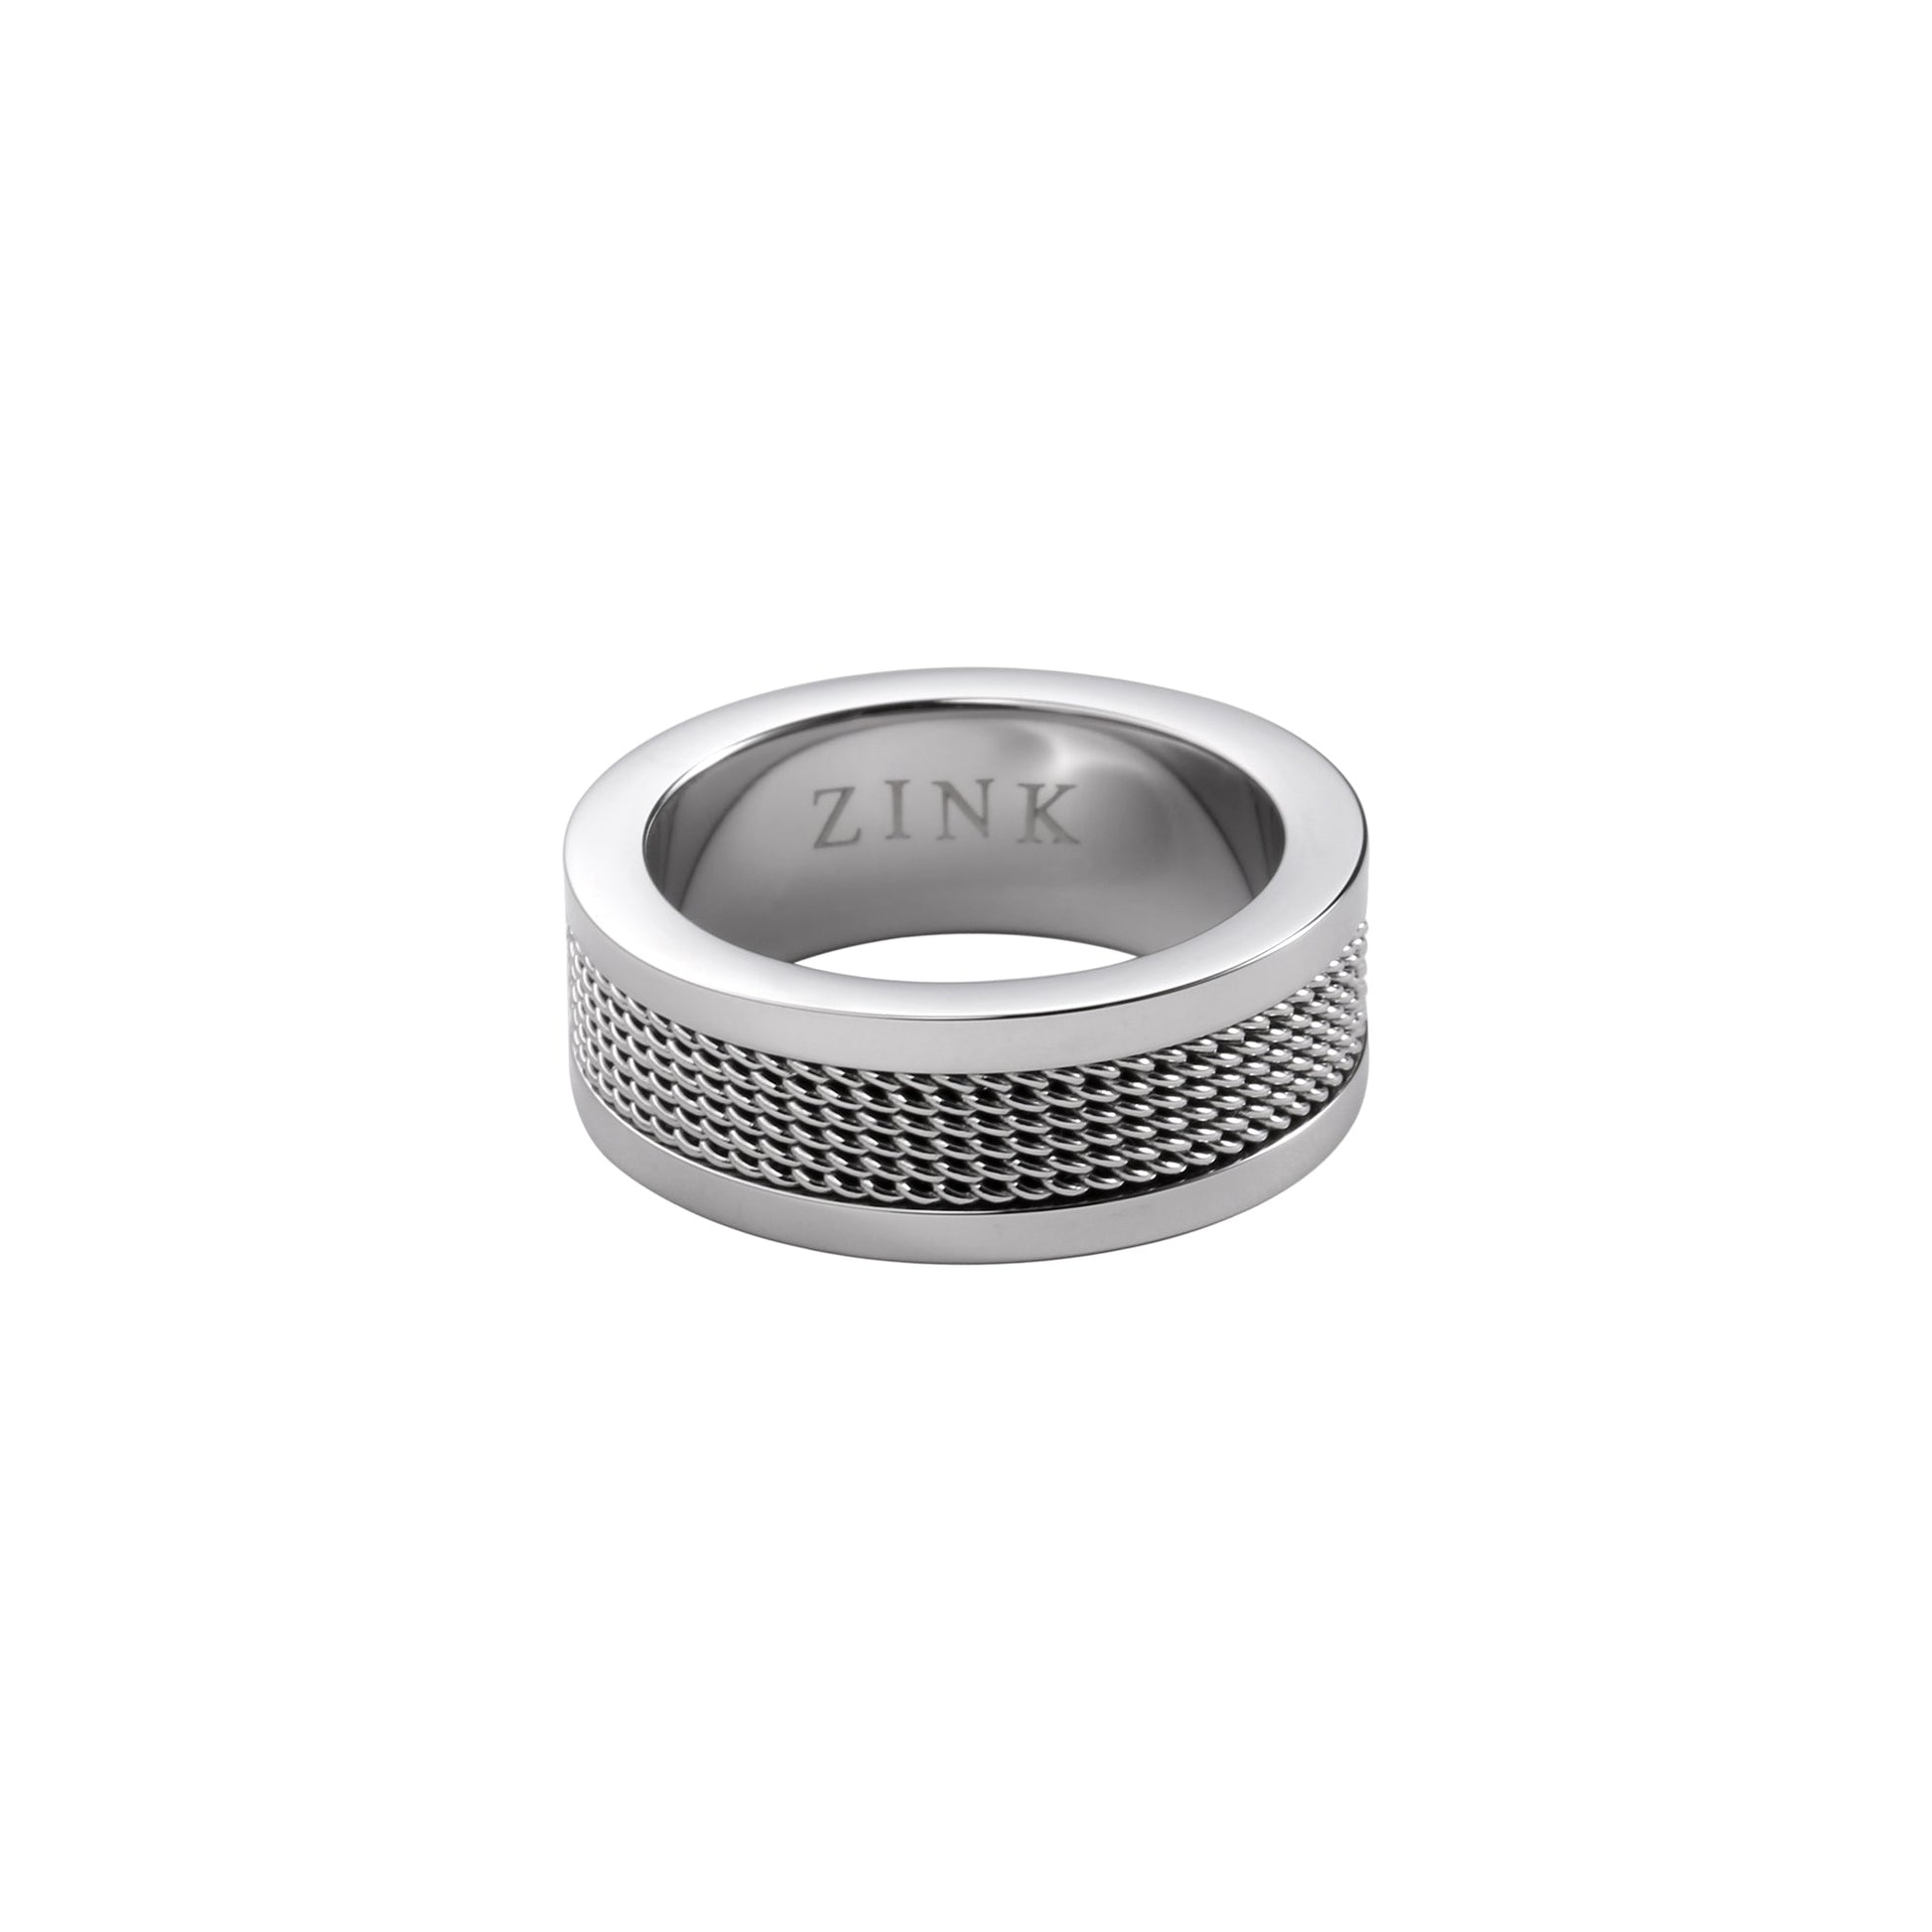 ZJRG017SSP ZINK Men's Ring